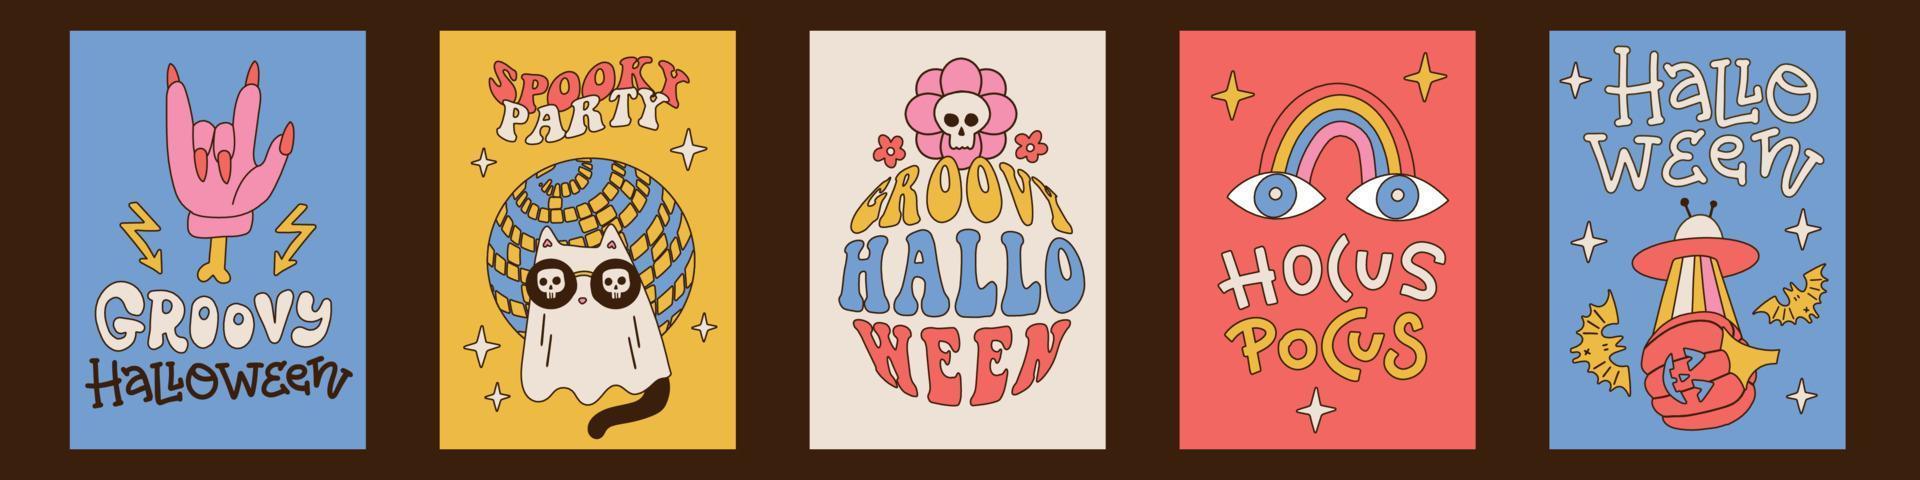 cartões retrô de halloween definidos no estilo dos anos 70-80 com letras e texto de fonte. banner para festa assustadora. cartão groovy. fundos de pôster de arte de parede. ilustração vetorial de mão linear desenhada. tamanho a4 vetor